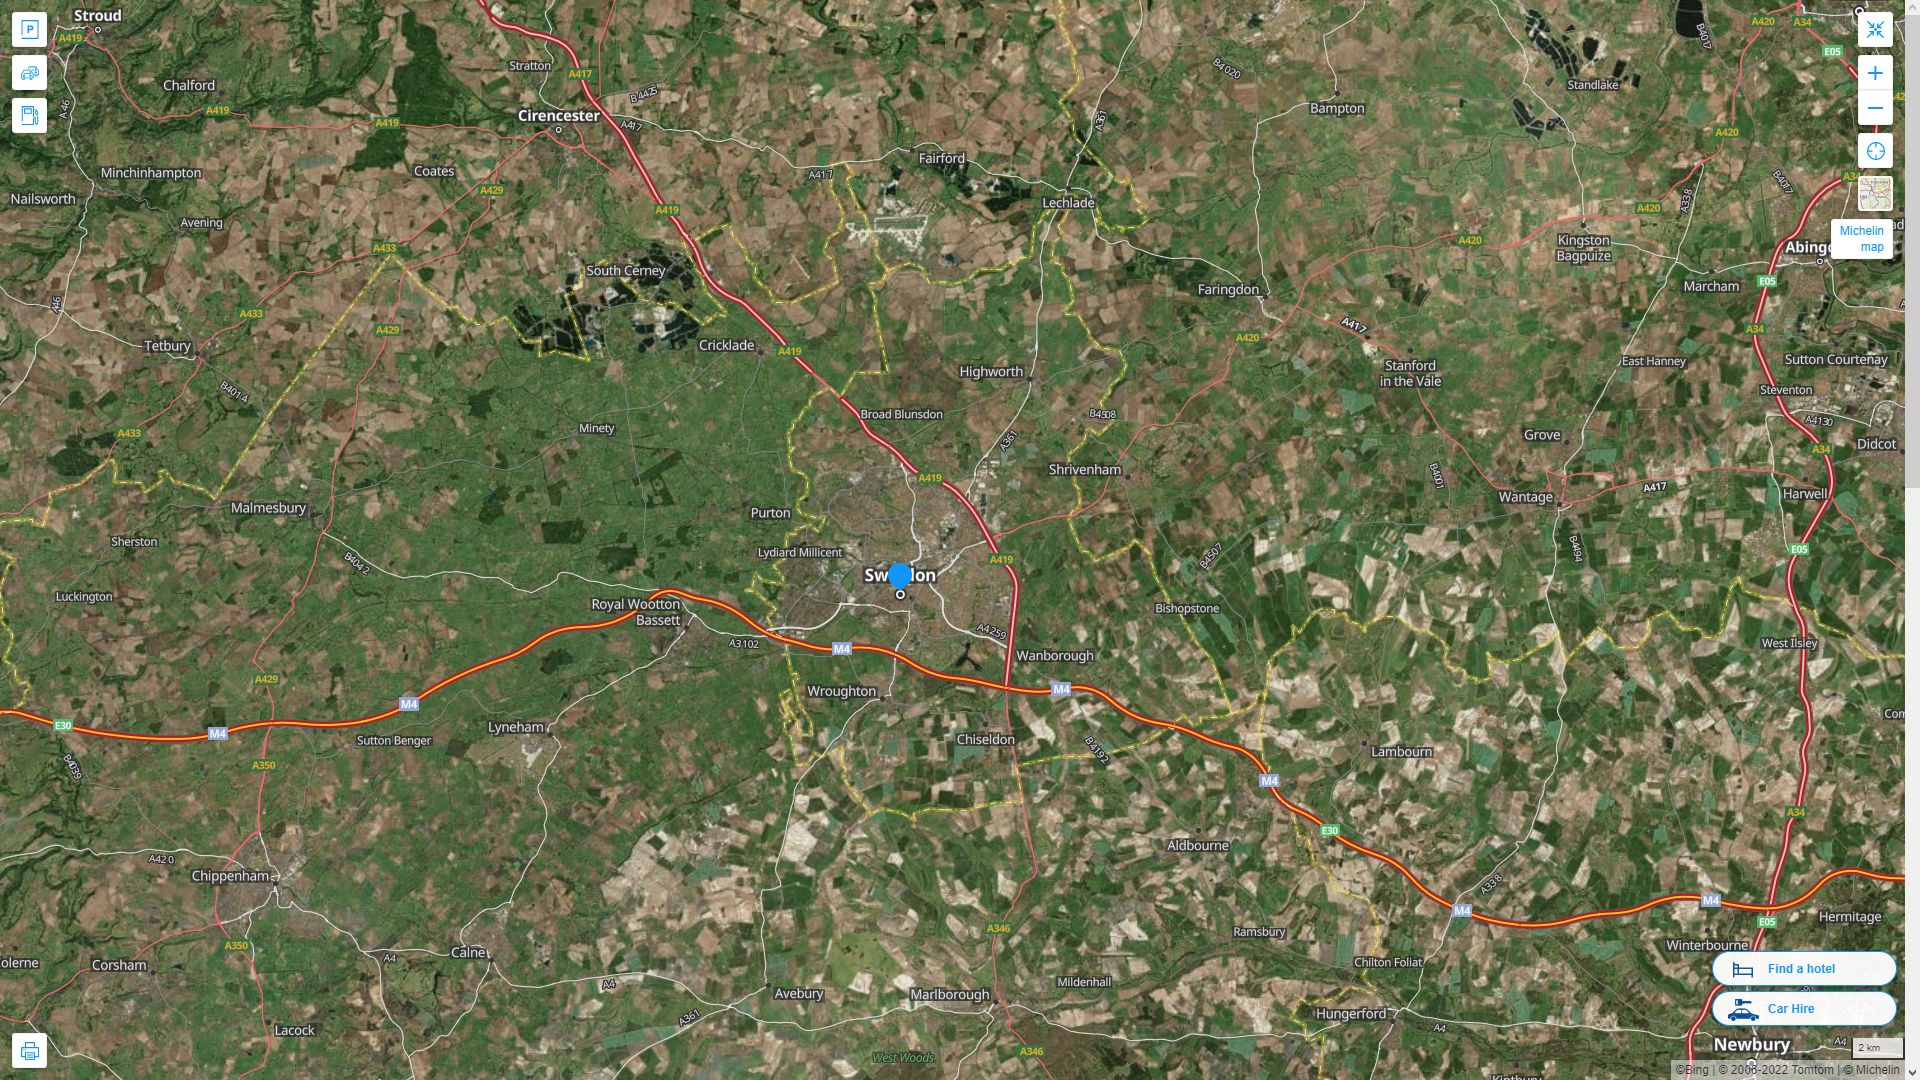 Swindon Royaume Uni Autoroute et carte routiere avec vue satellite